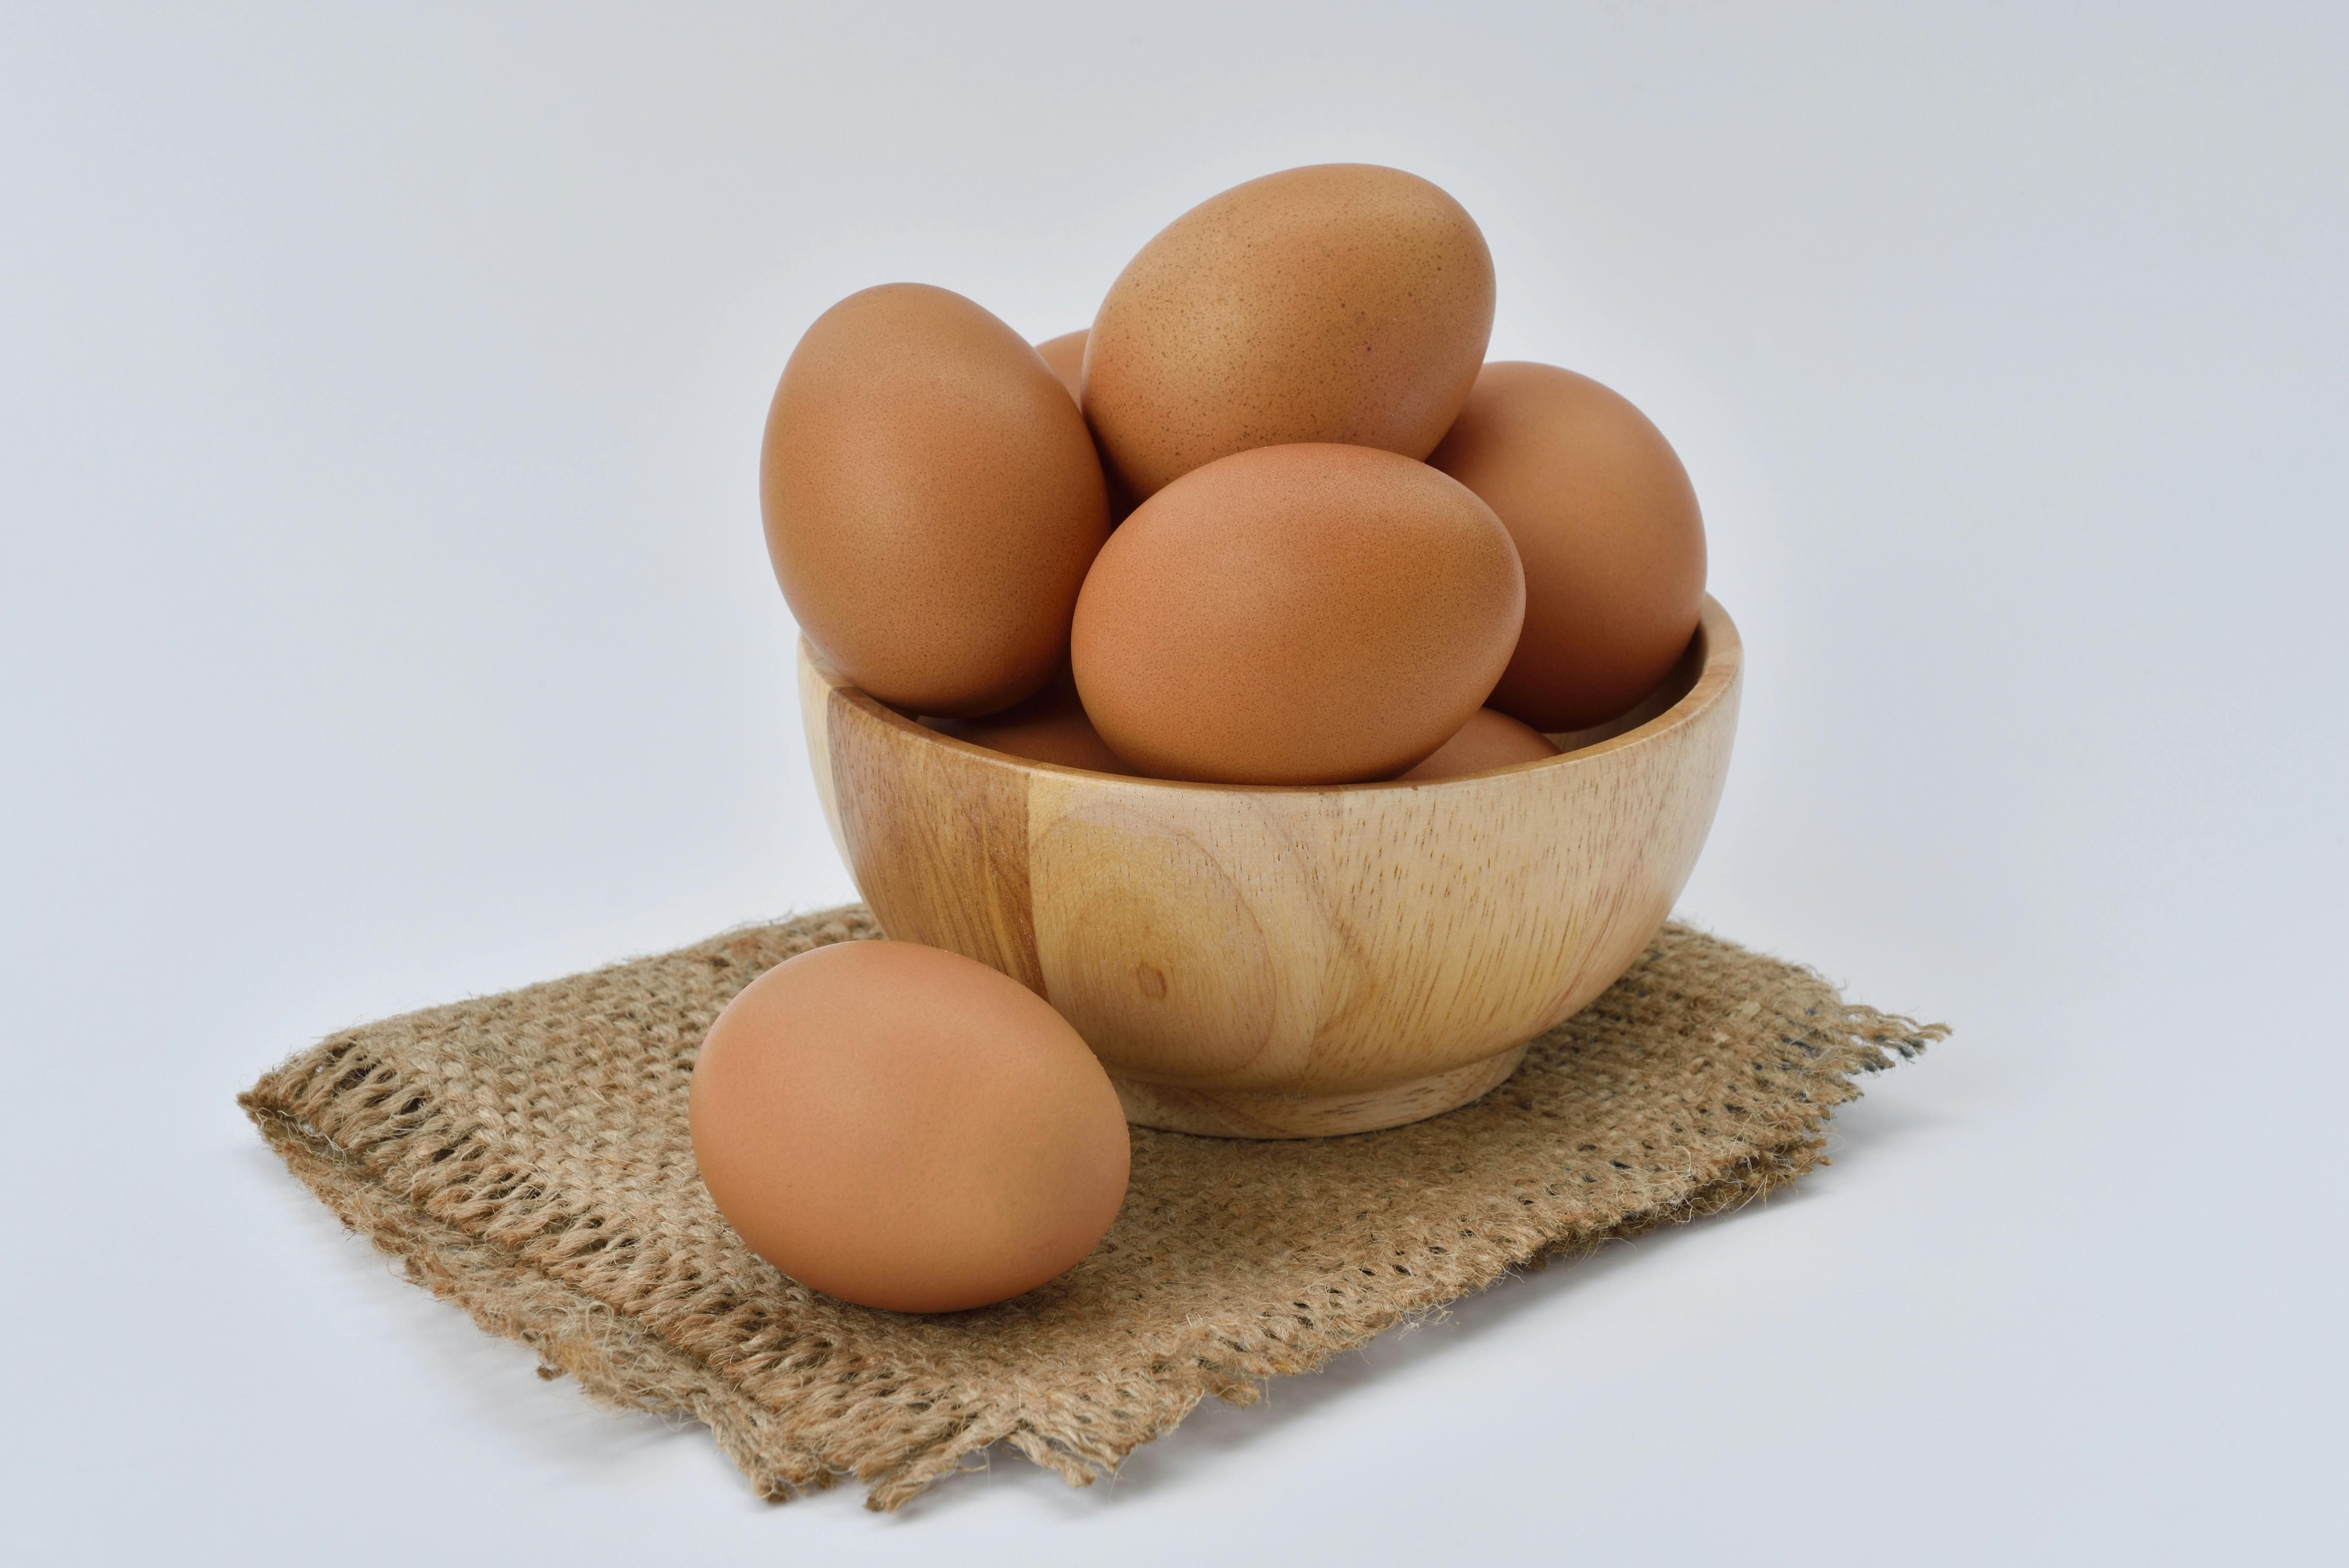 Ingat, batasi jumlah konsumsi telur per hari untuk menghindari efek samping!